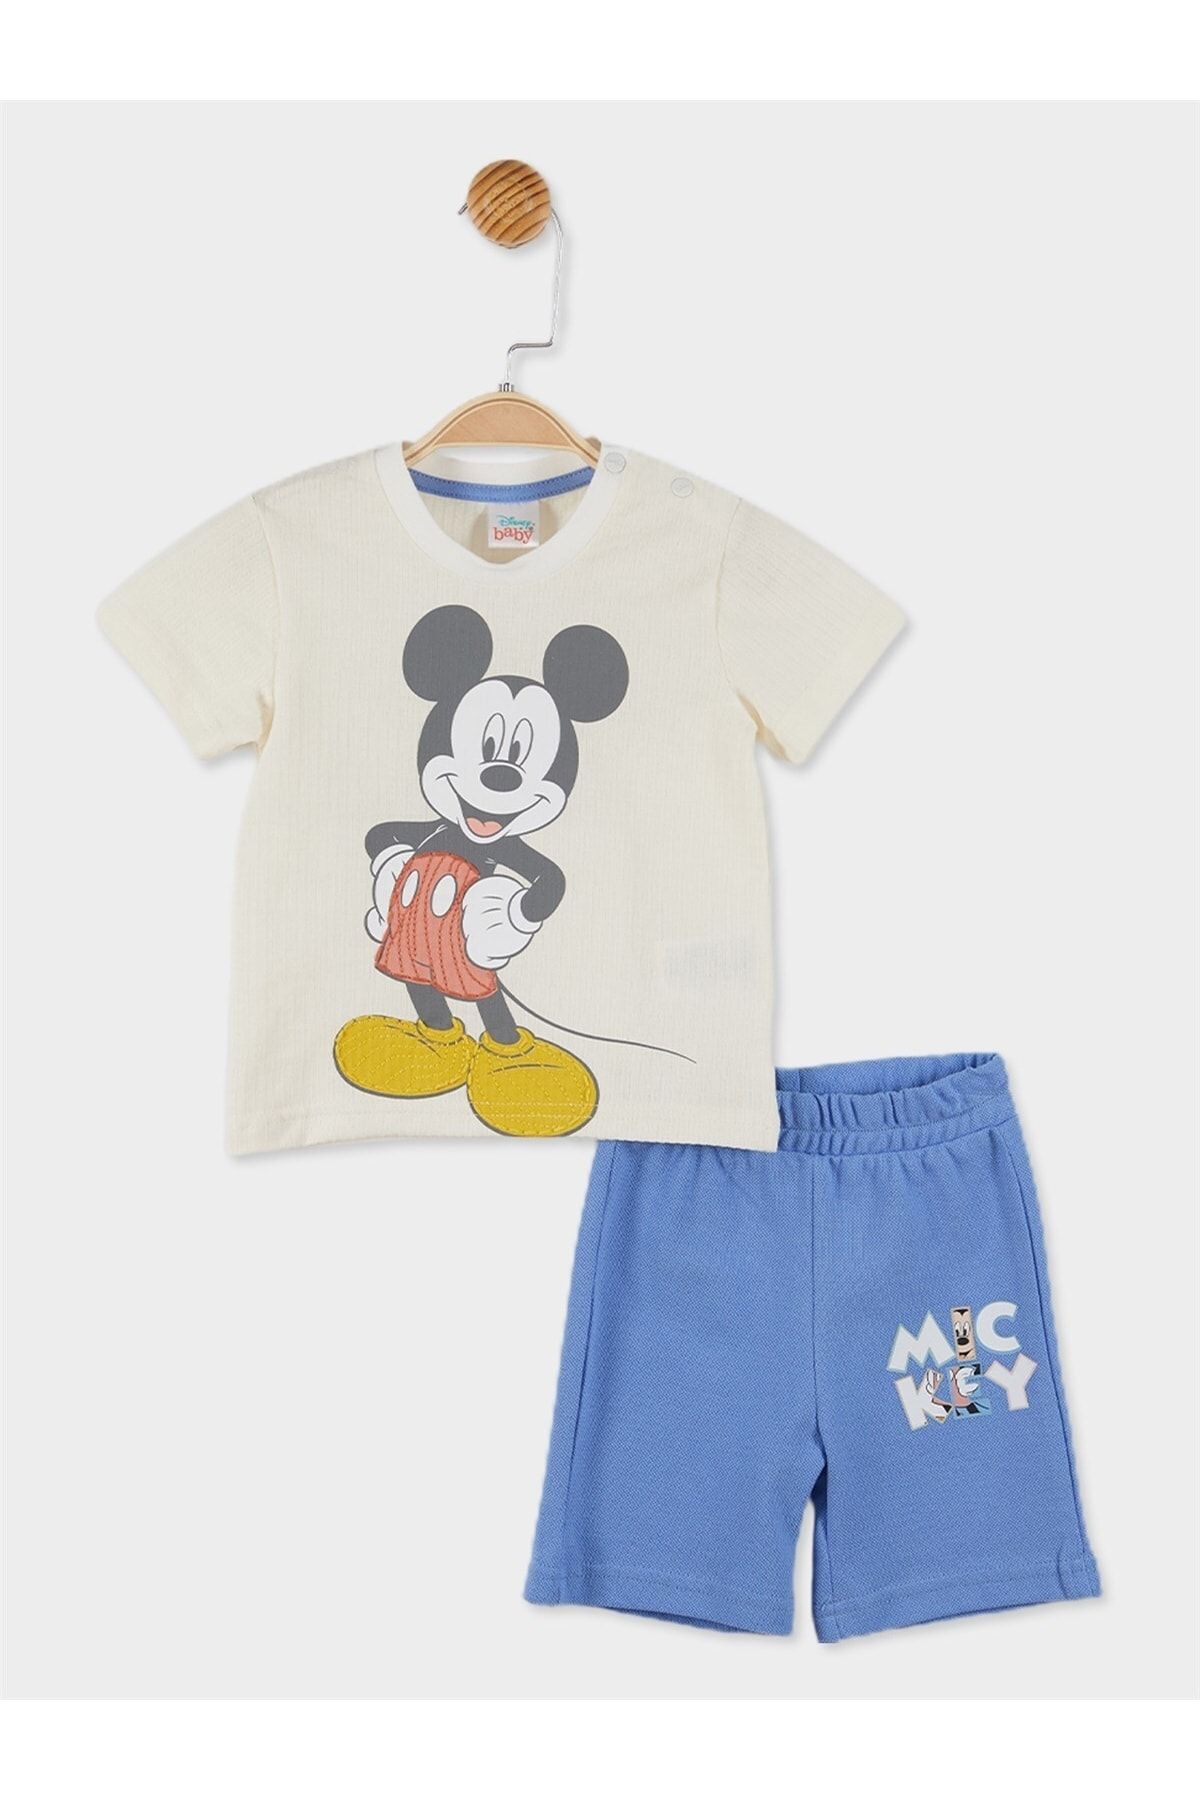 Mickey Mouse Disney Lisanslı Erkek Bebek Tişört Ve Şort 2'li Takım 20886